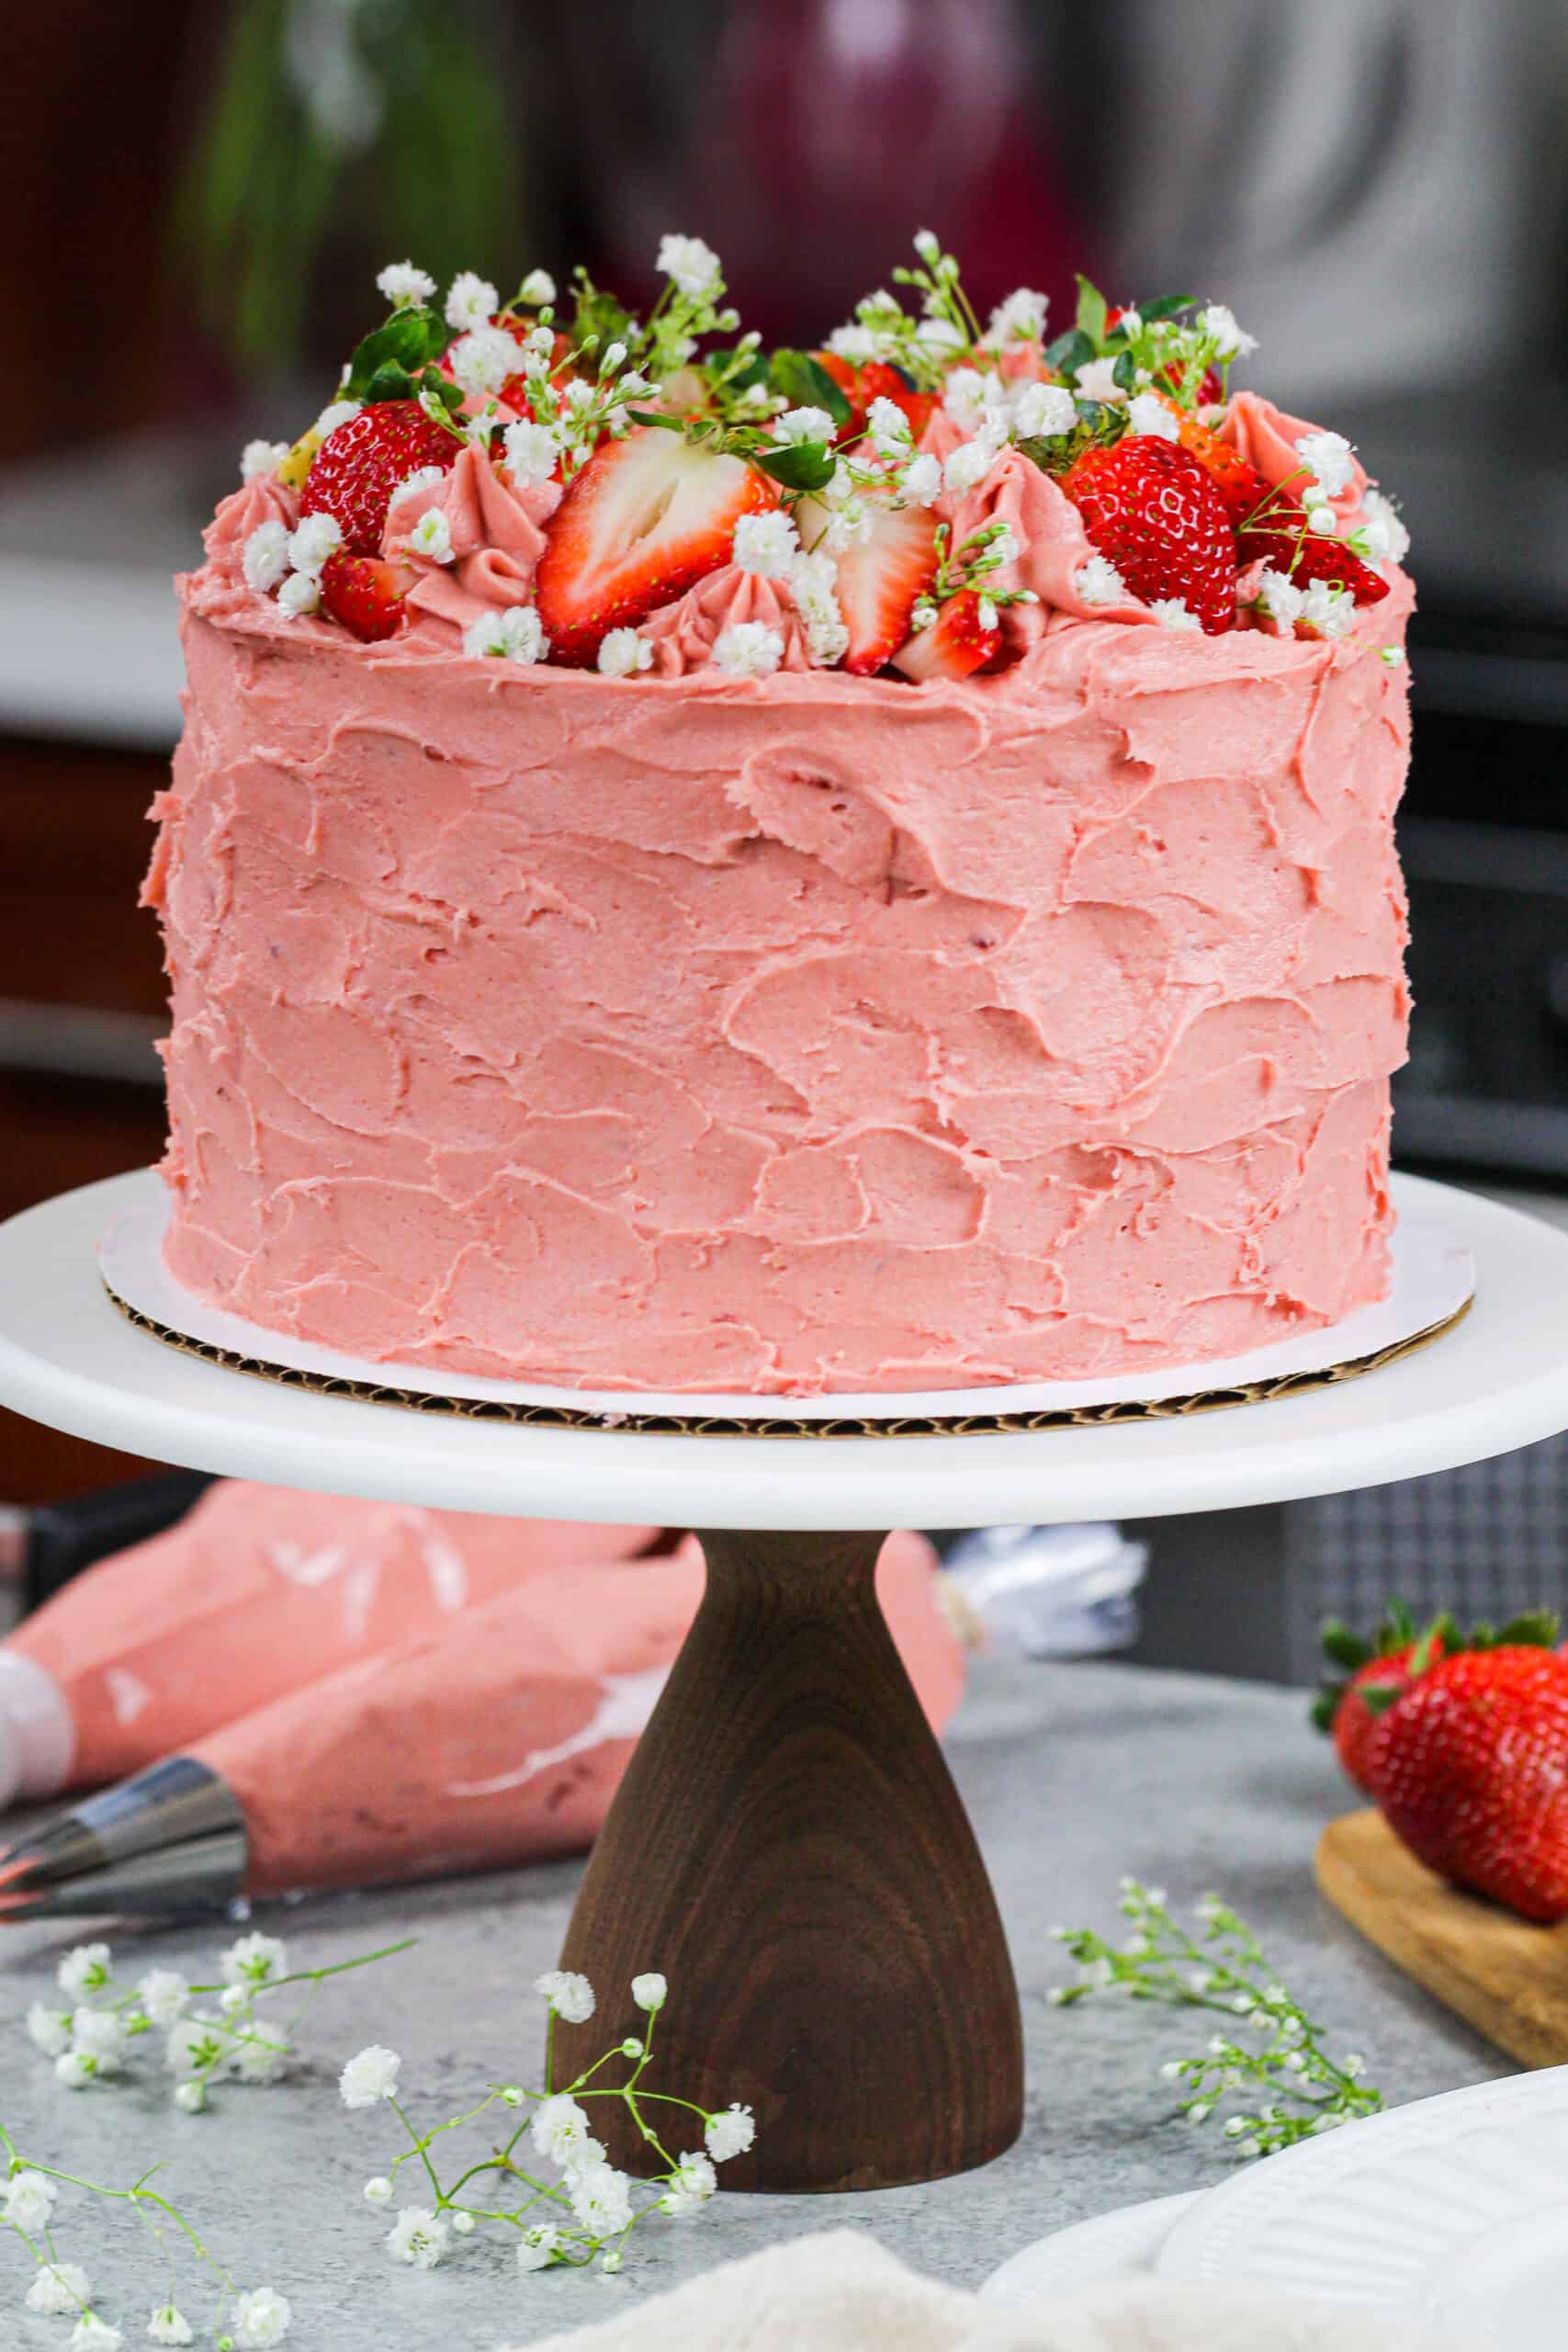 Homemade Strawberry Cake - My Cake School